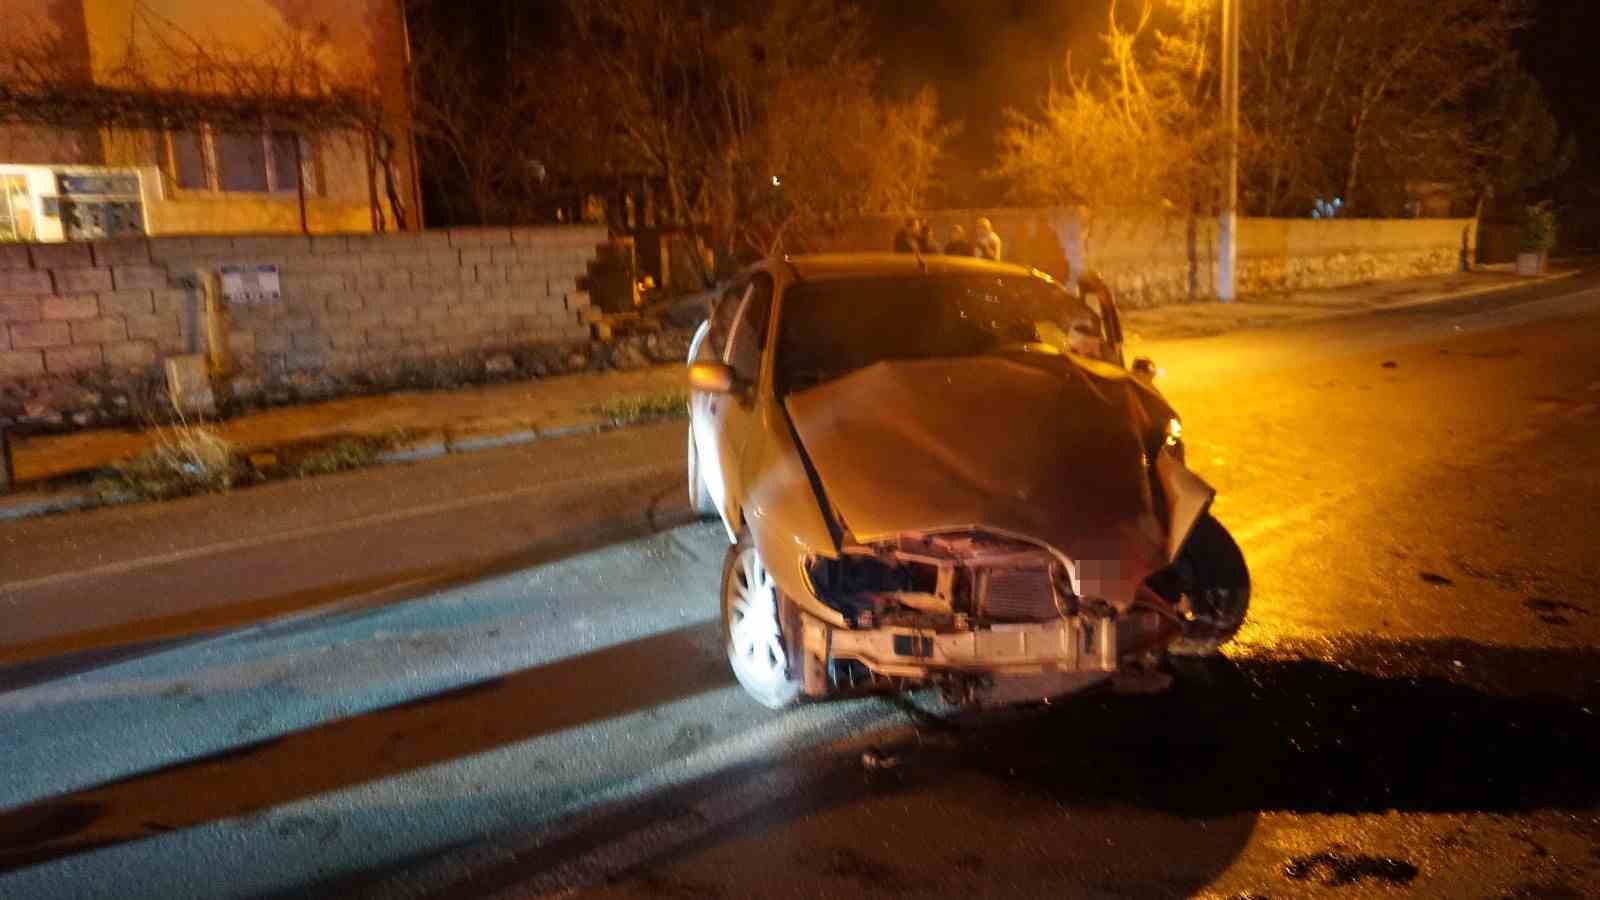 Burdur’da kaza: Otomobil bahçe duvarına çarptı, 2 kişi yaralandı.